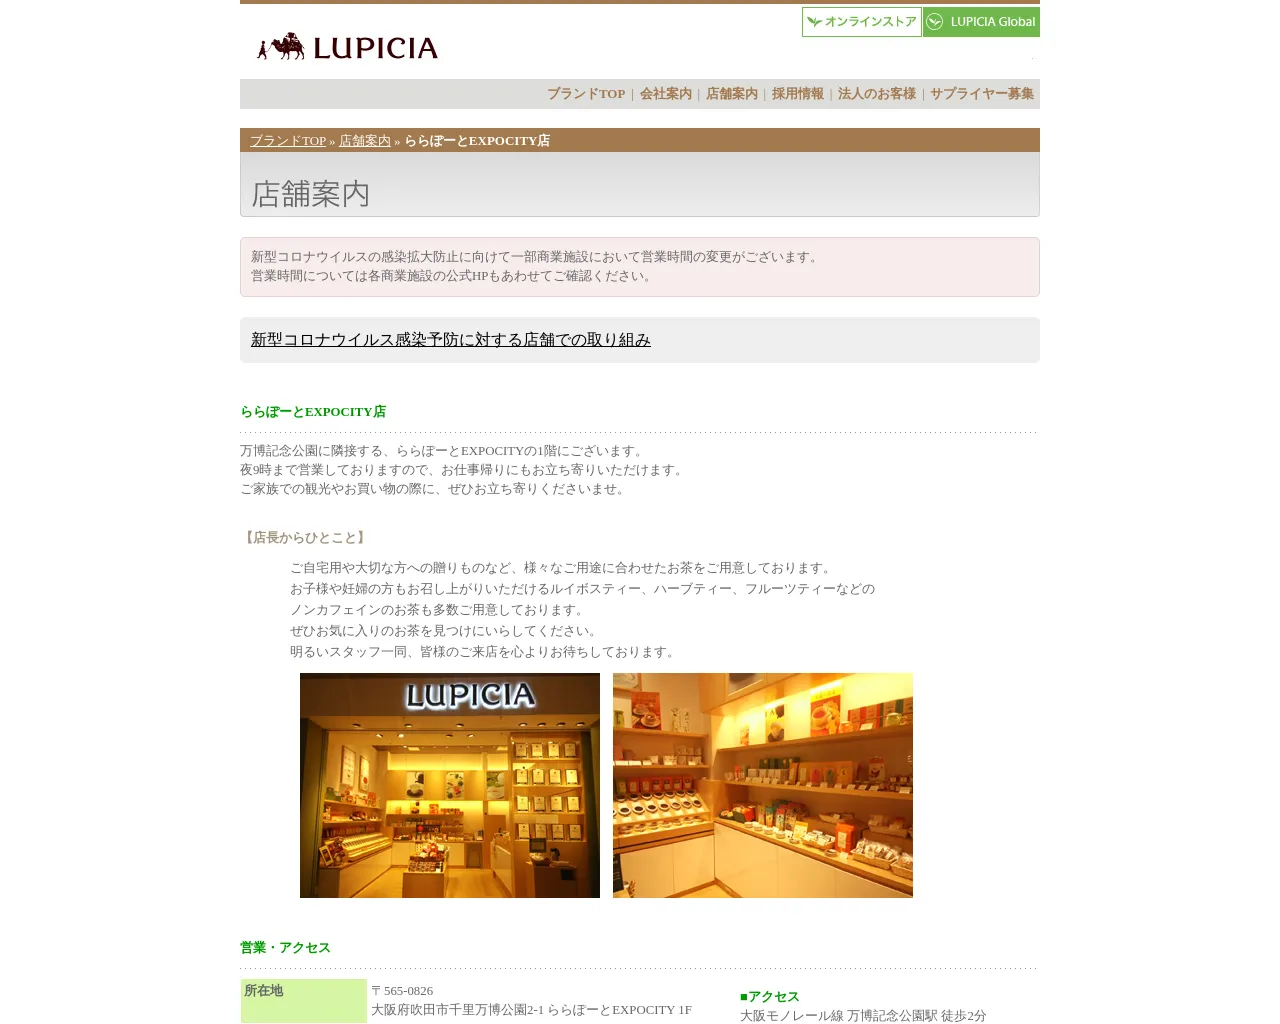 LUPICIA site